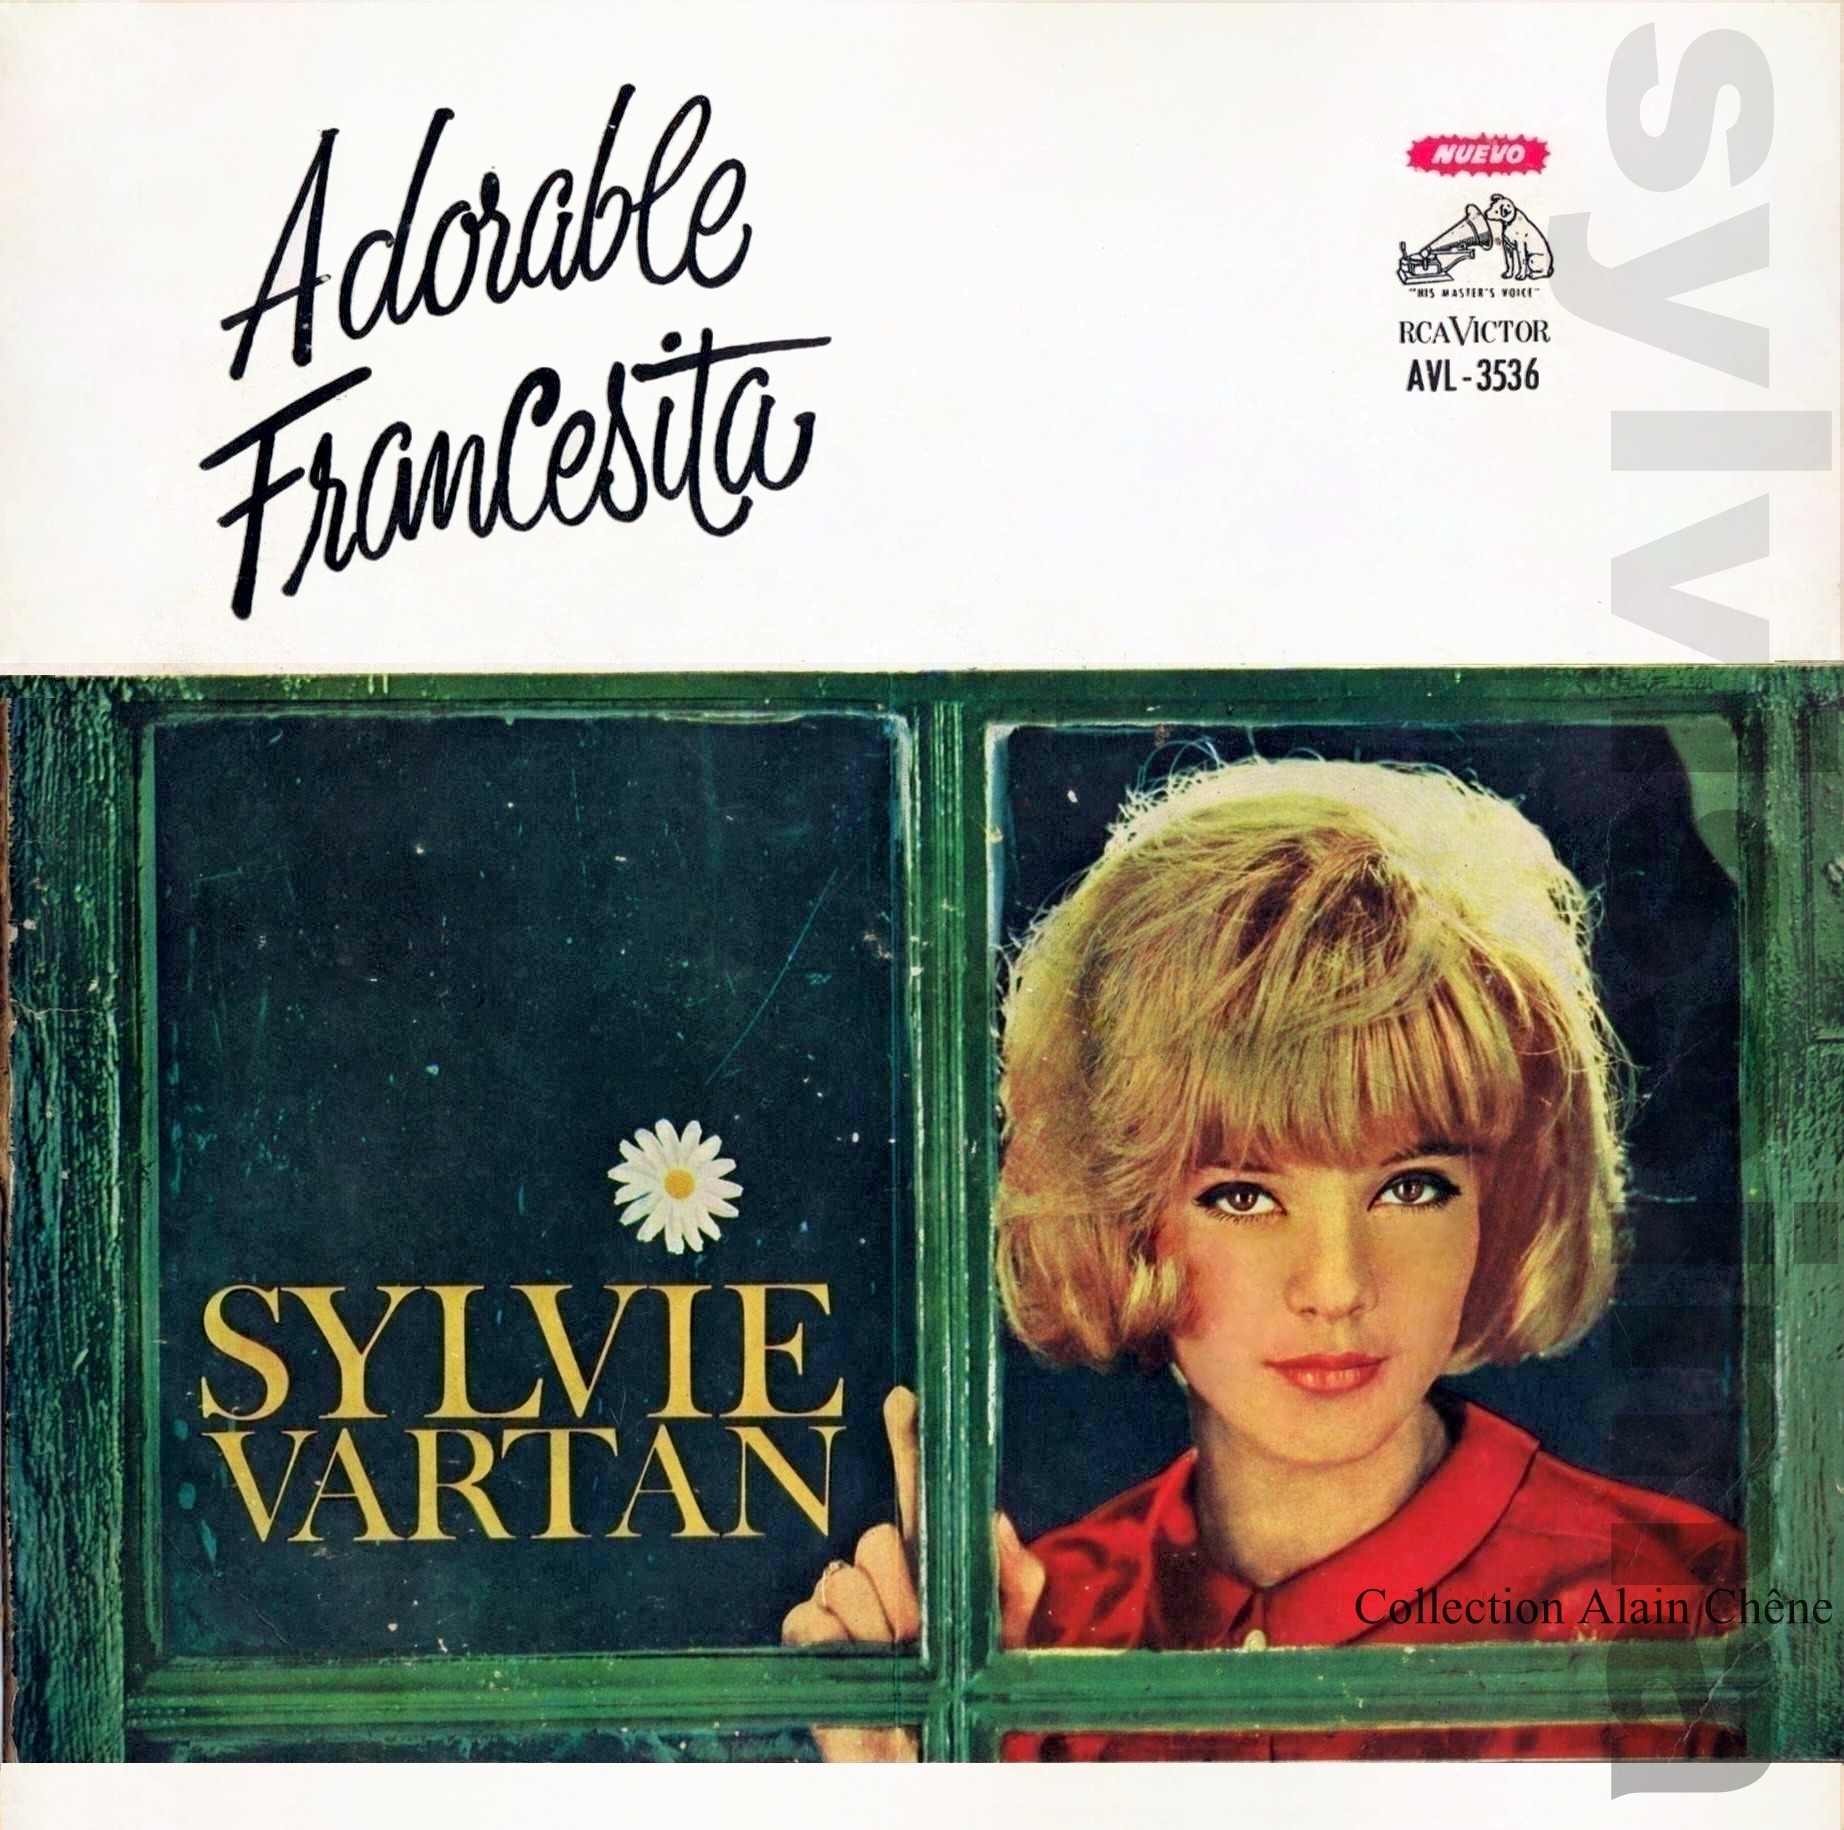 Sylvie Vartan album Uruguay "Adorable Francesita" LP RCA VICTOR AVL 3536 (1963)